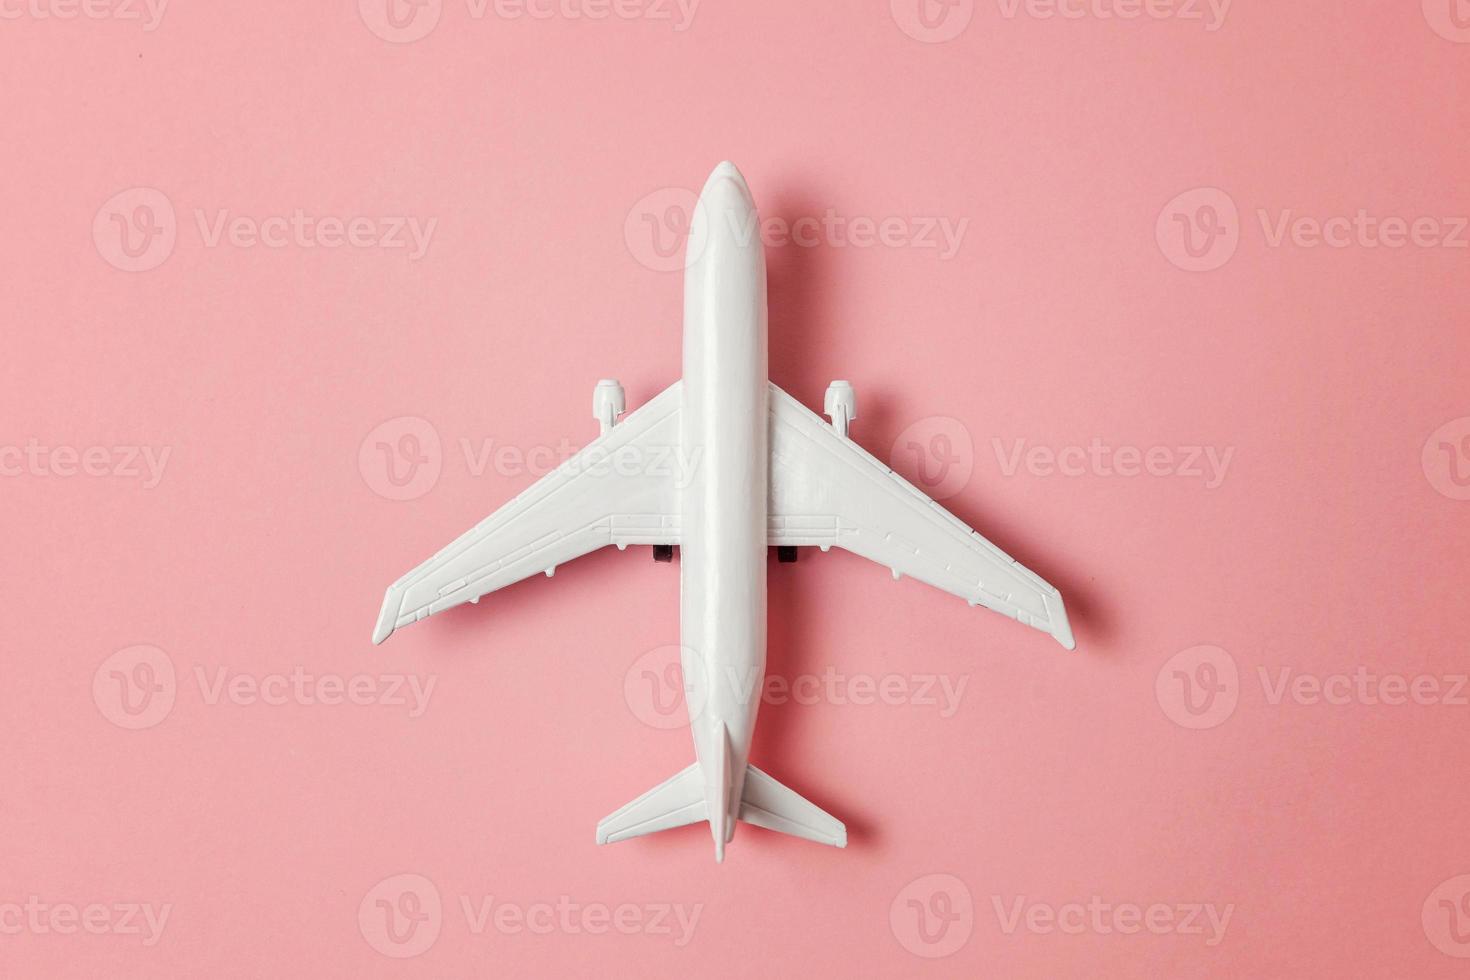 modelo de juguete en miniatura de diseño simplemente plano sobre fondo de moda de papel de colores pastel rosa. viaje en avión vacaciones fin de semana de verano viaje de aventura en el mar viaje boleto tour concepto. foto